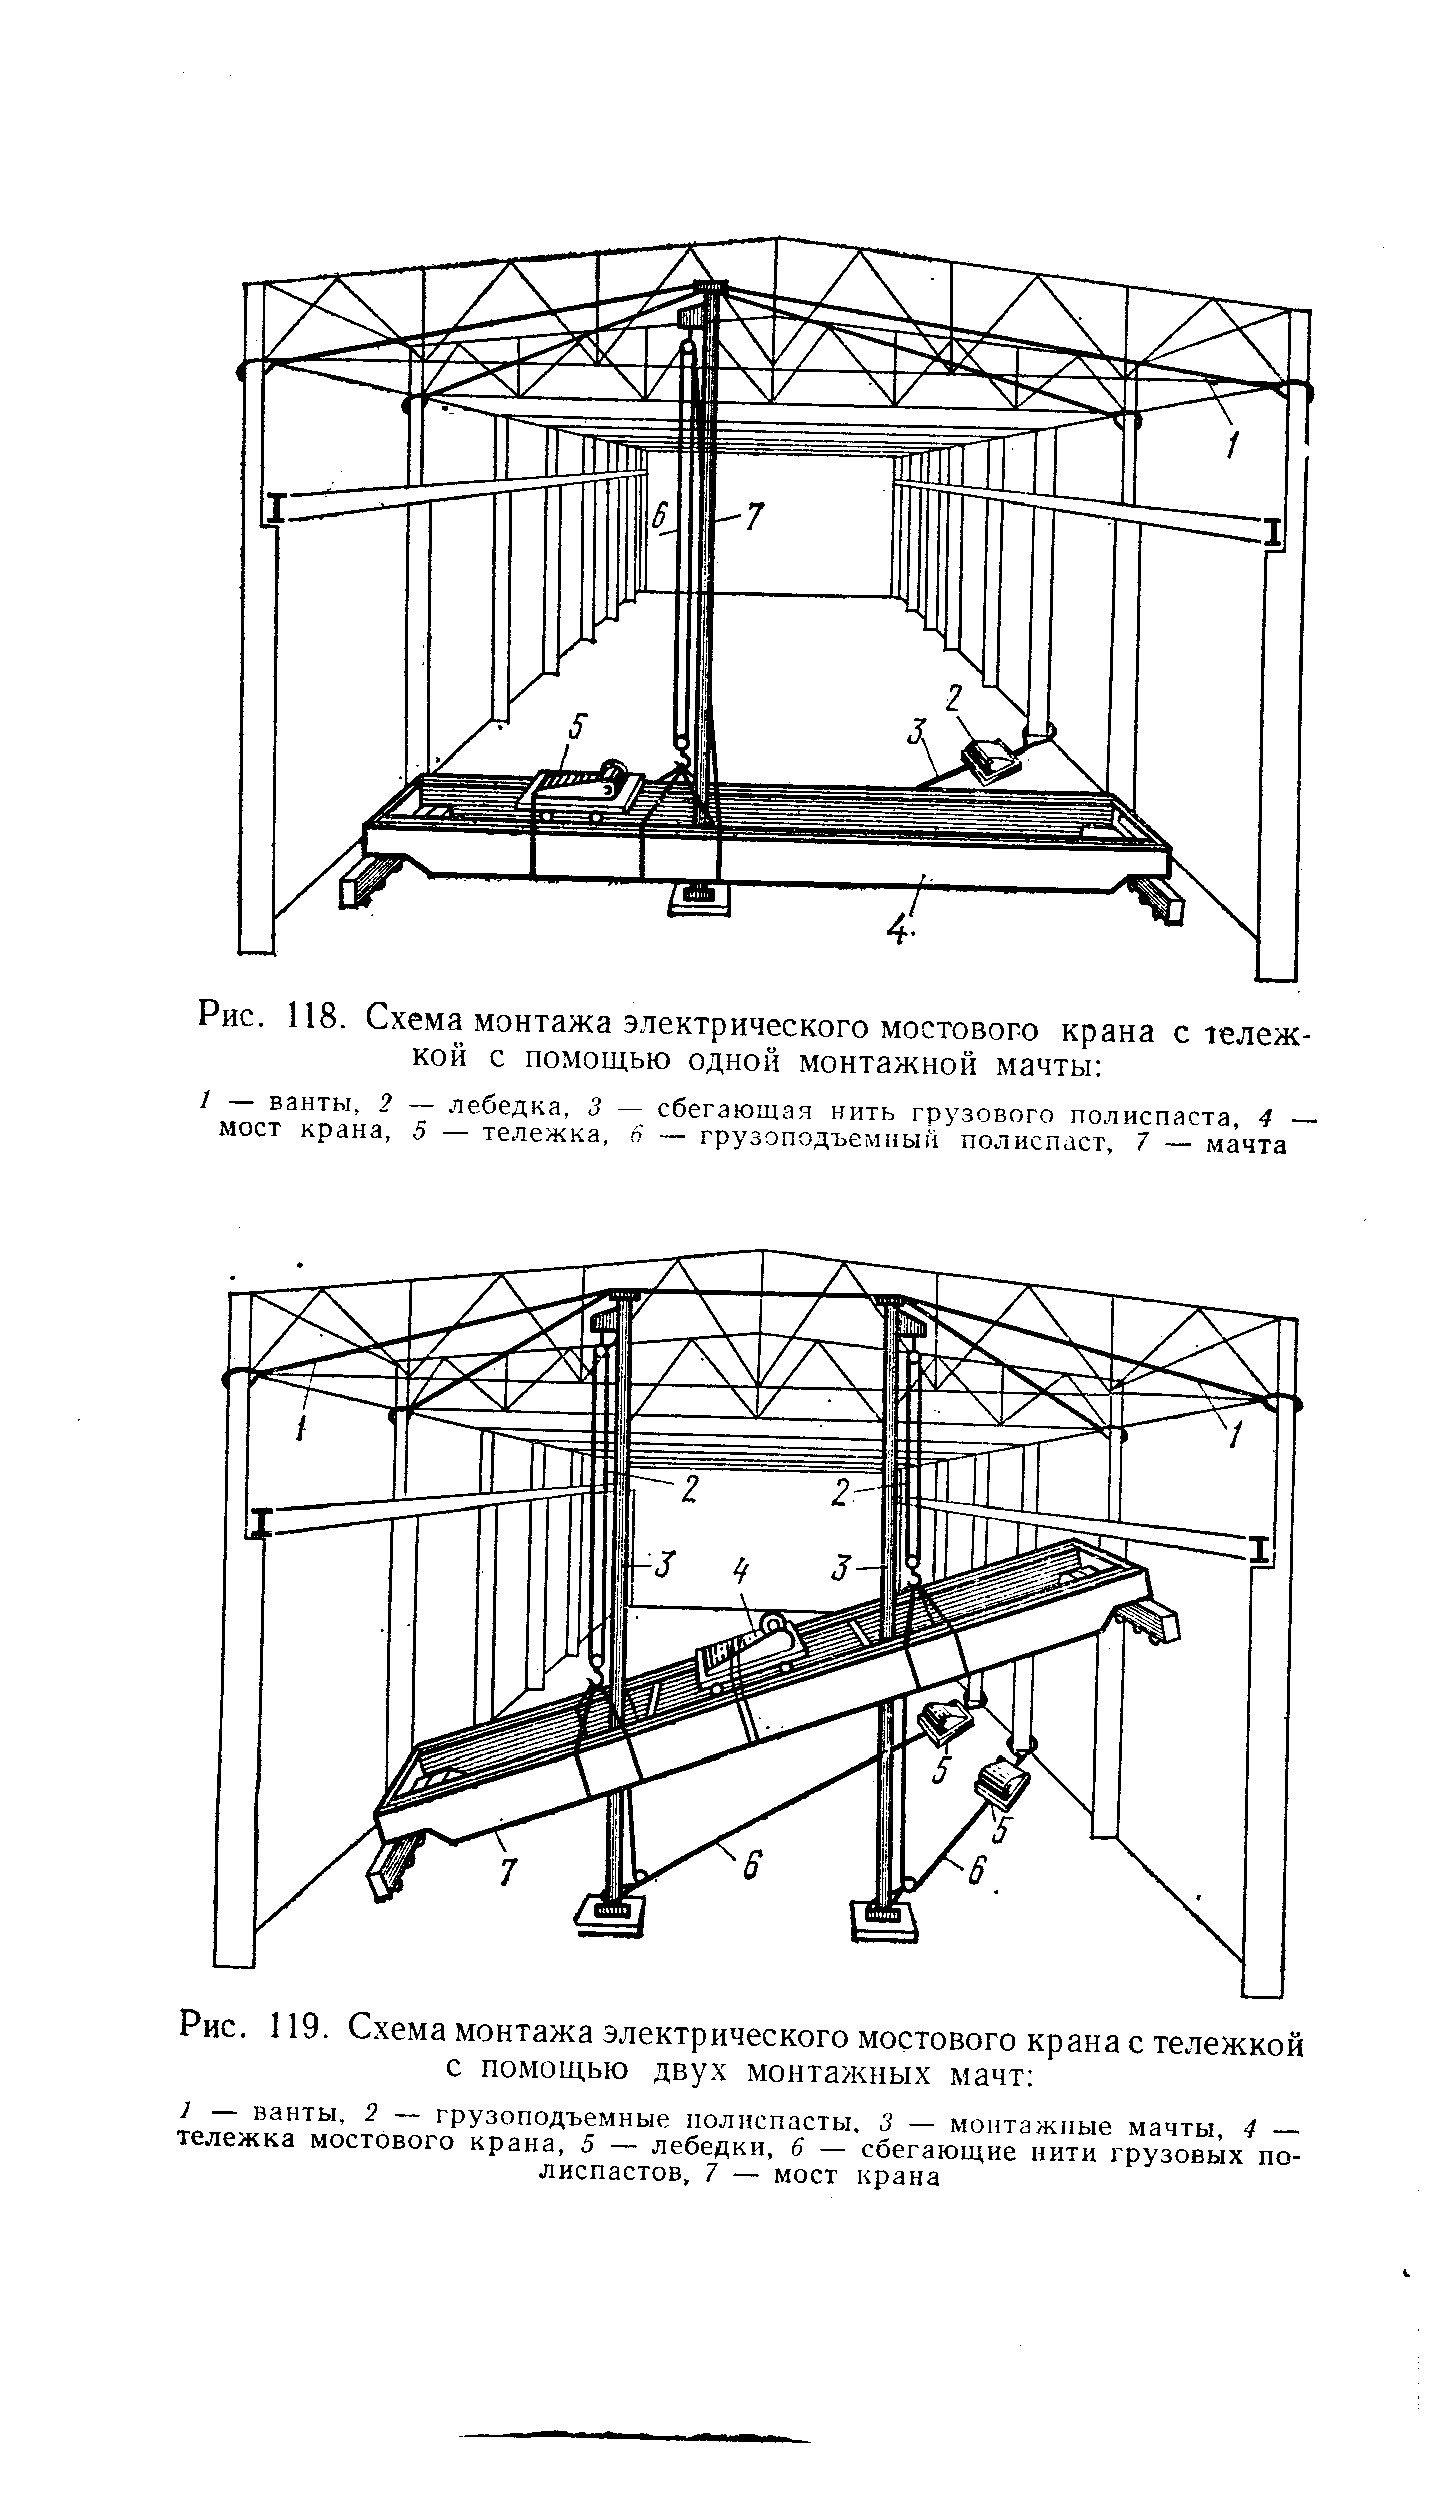 Рис. 119. Схема монтажа электрического мостового крана с тележкой с помощью двух монтажных мачт 
